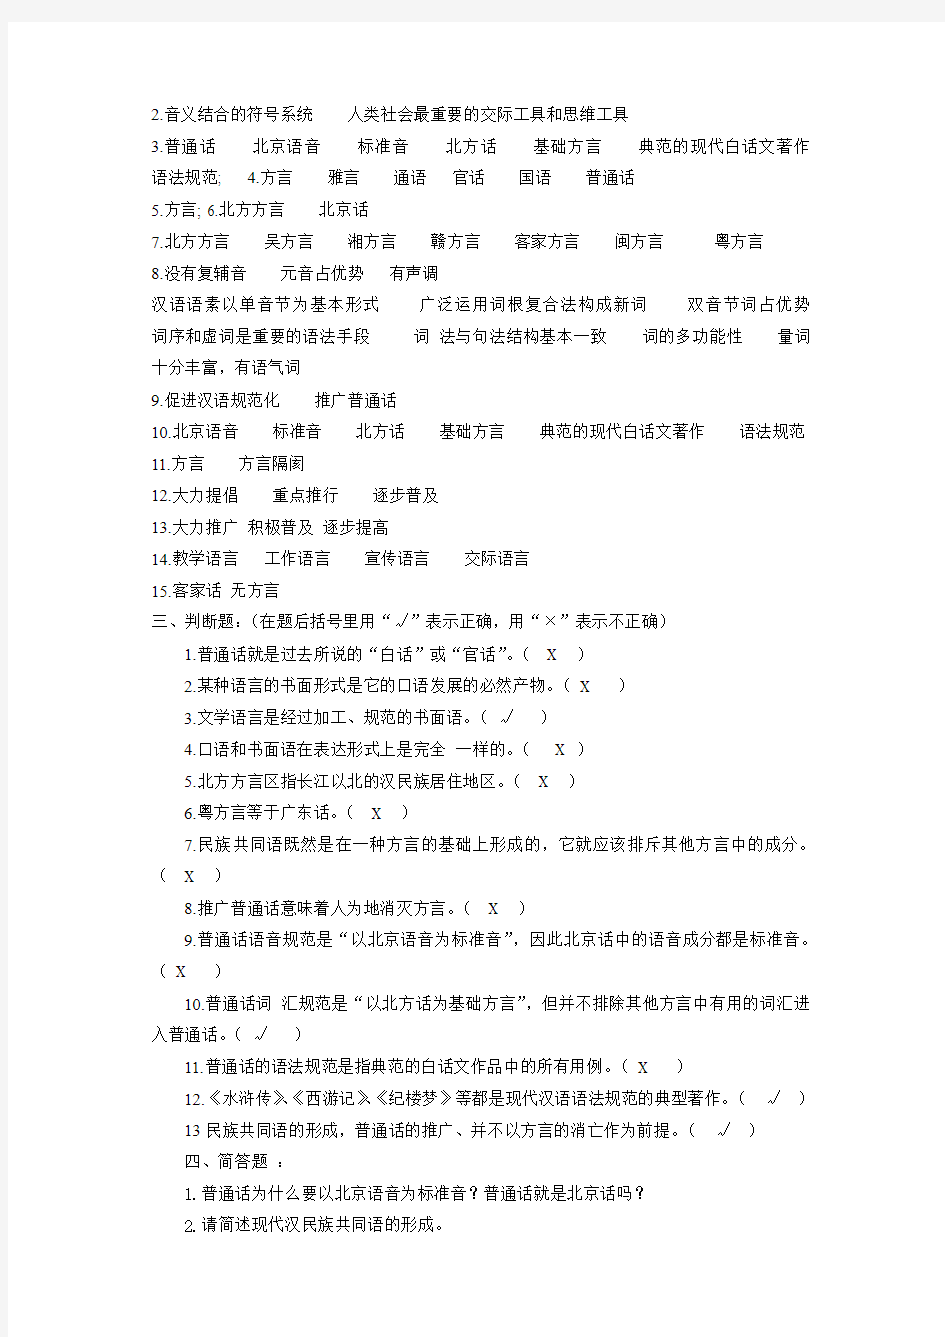 现代汉语试题库(每章都有) de chuong 1-2-3-6 dap an chuong 123456